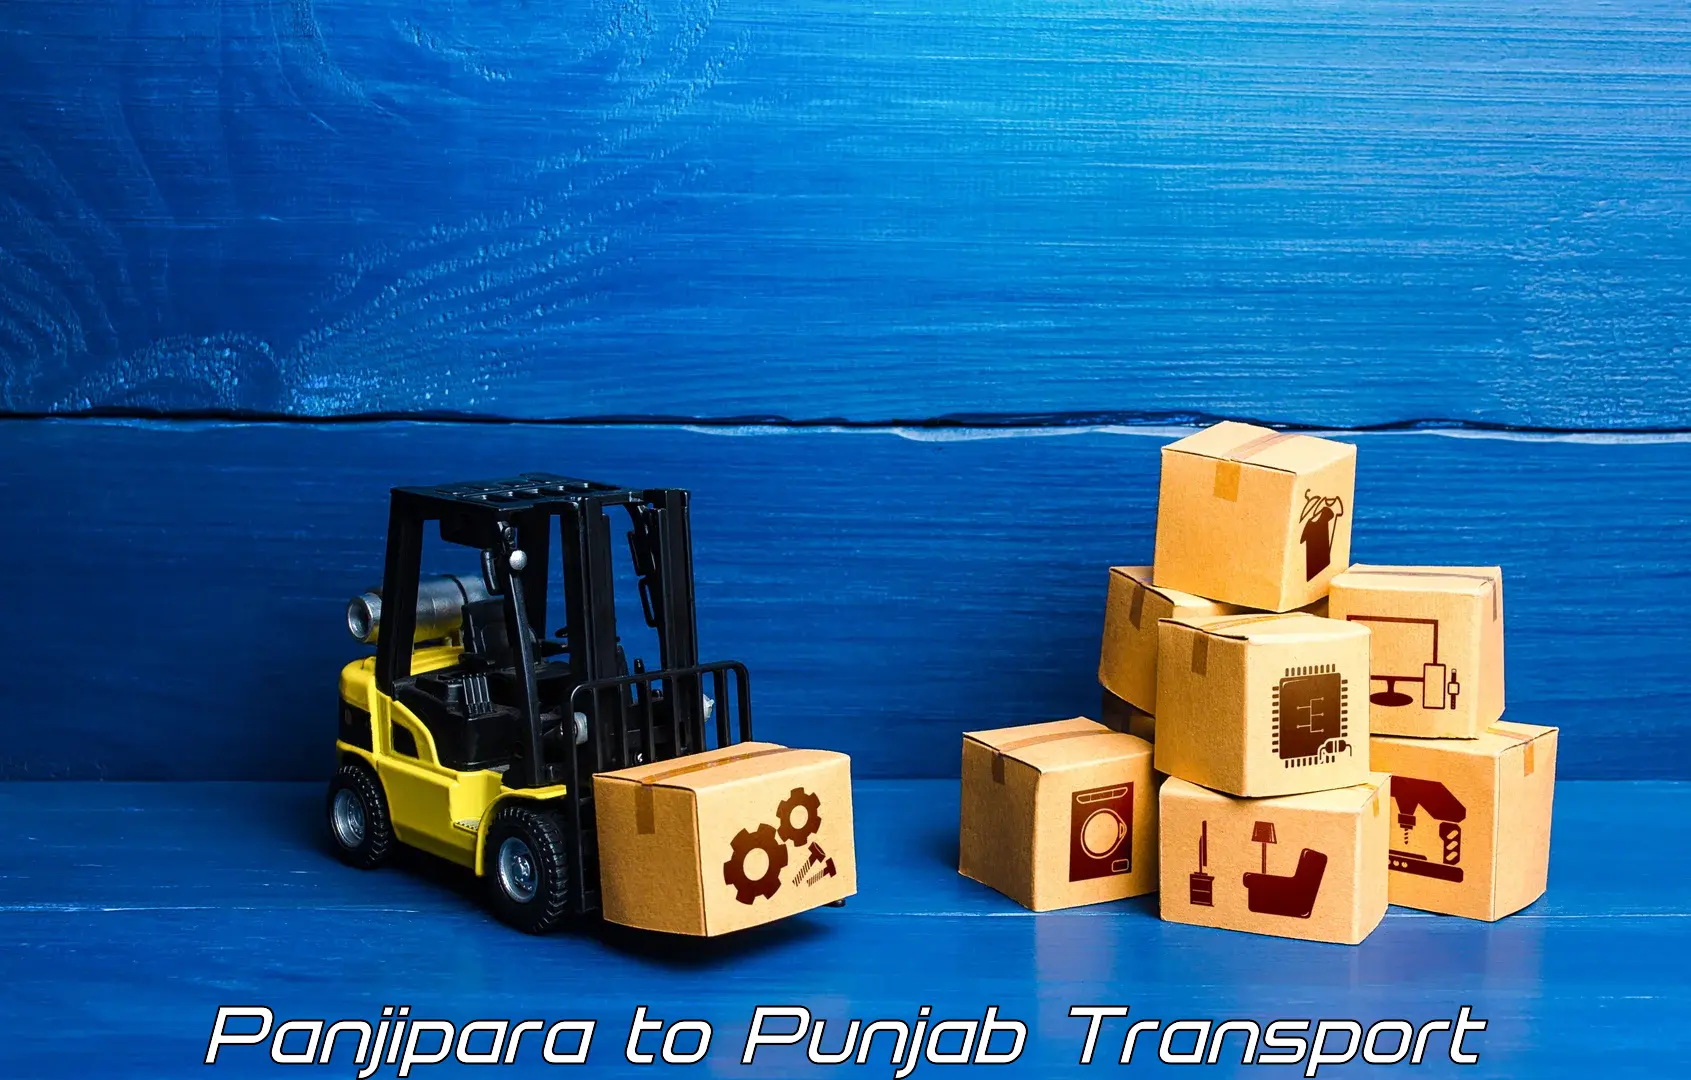 Cargo transport services in Panjipara to Punjab